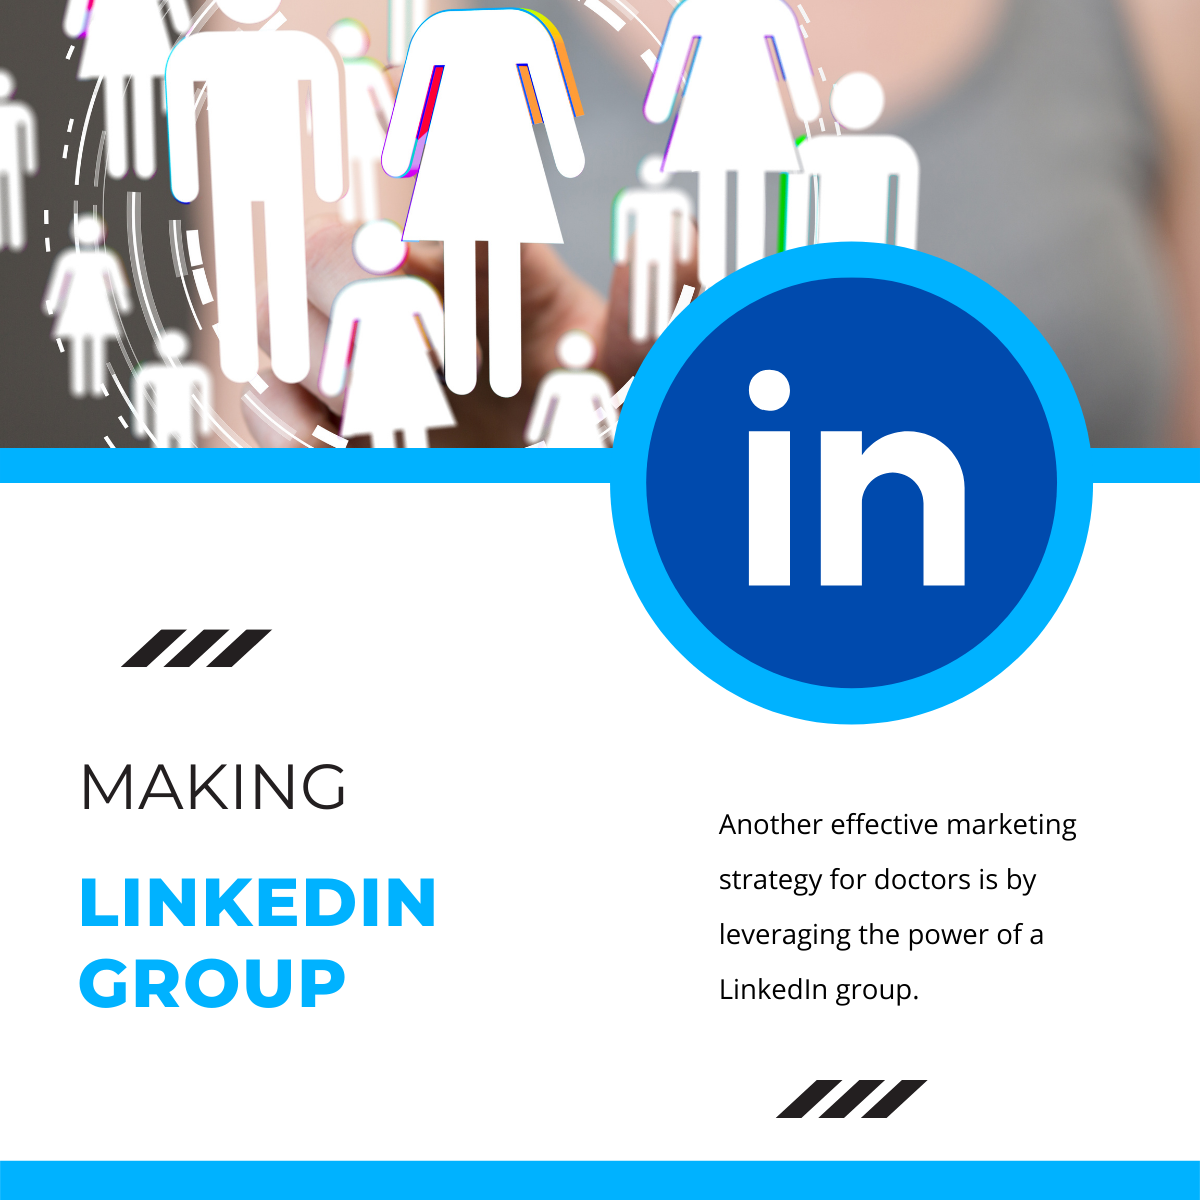 Making LinkedIn Group